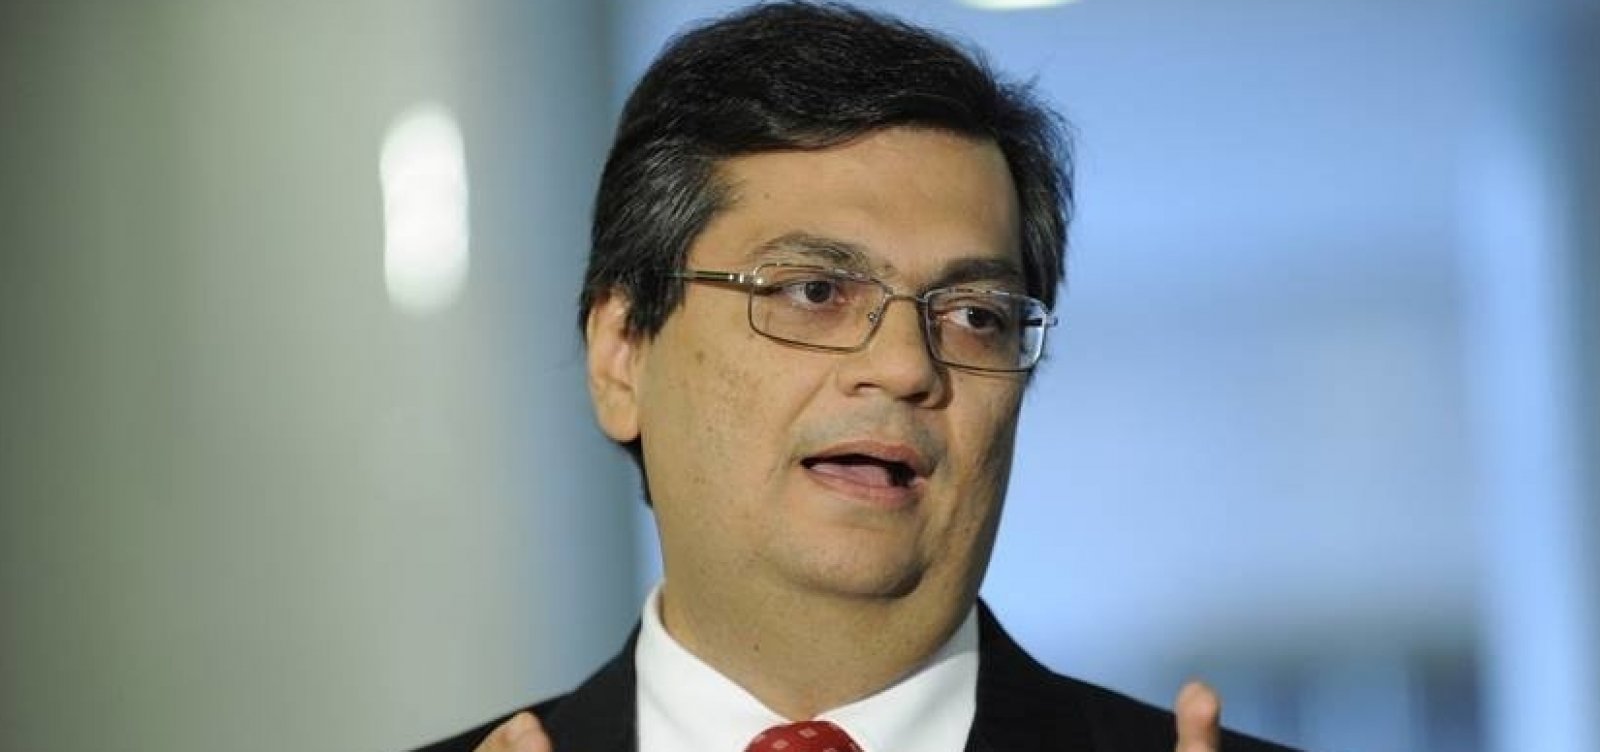 Governador do Maranhão avalia denunciar Bolsonaro por racismo